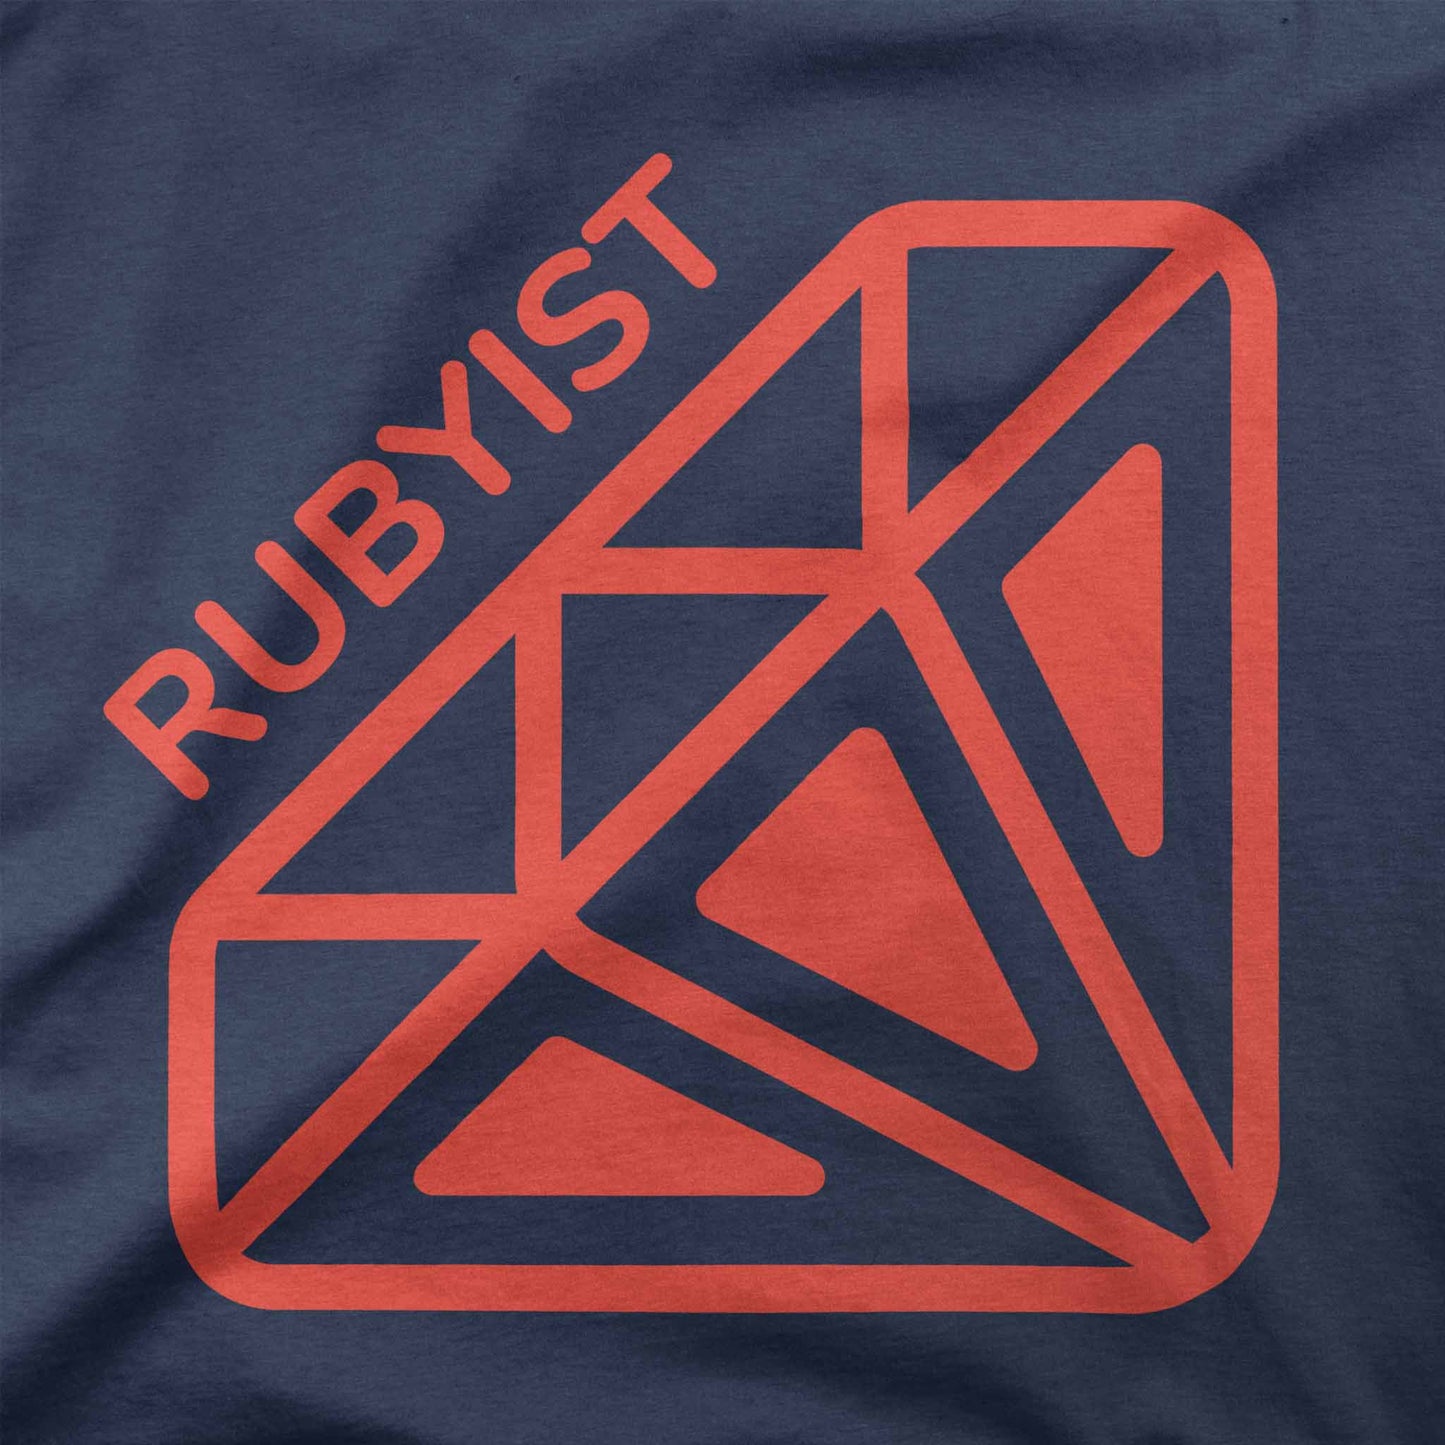 The Rubyist